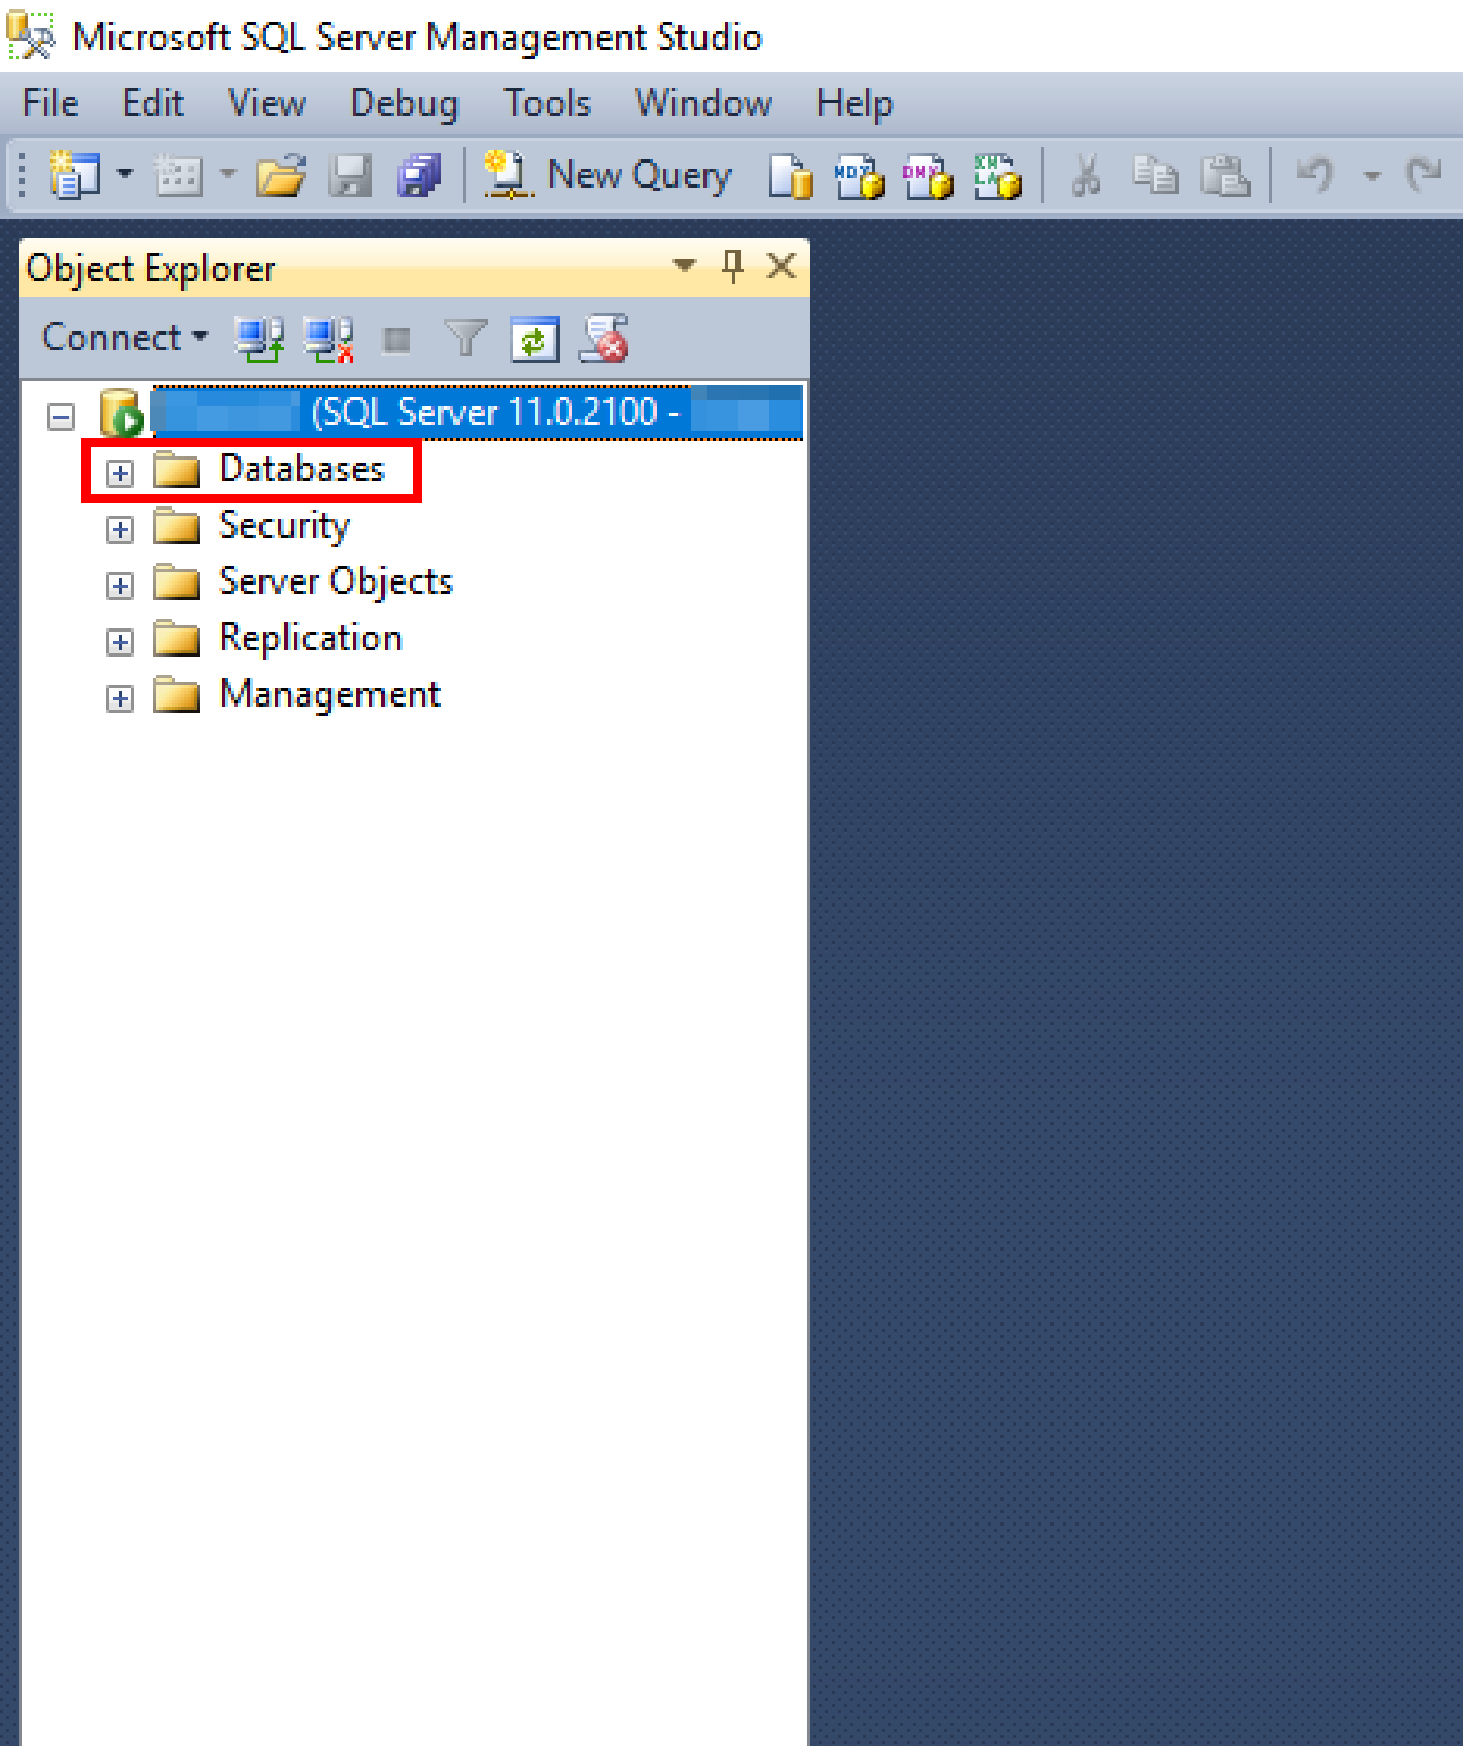 Expanding Database Folder under Object Explorer Panel